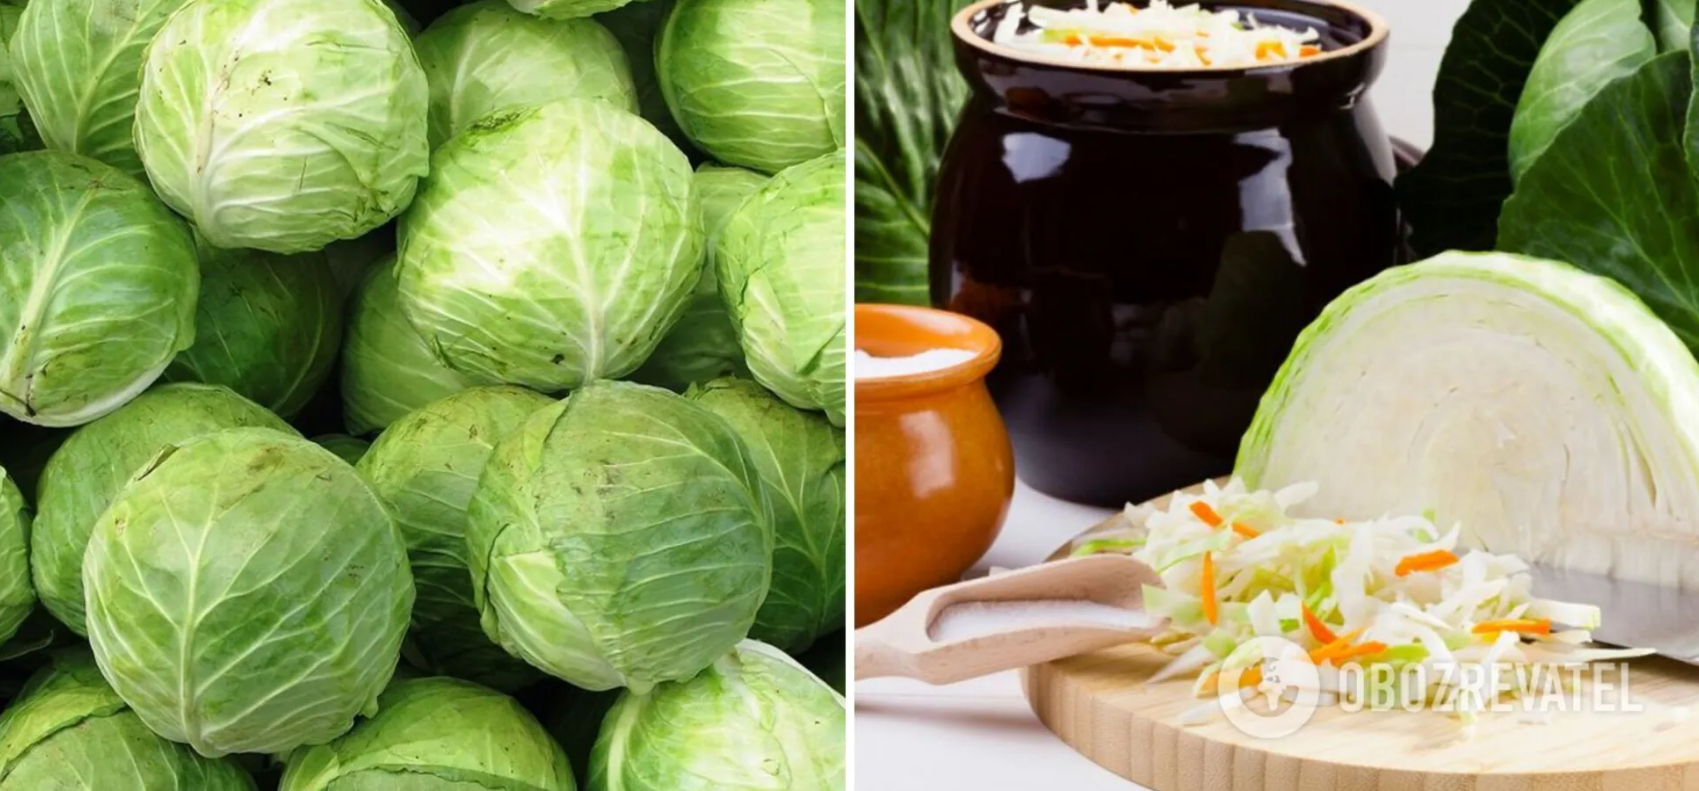 Cabbage for sauerkraut